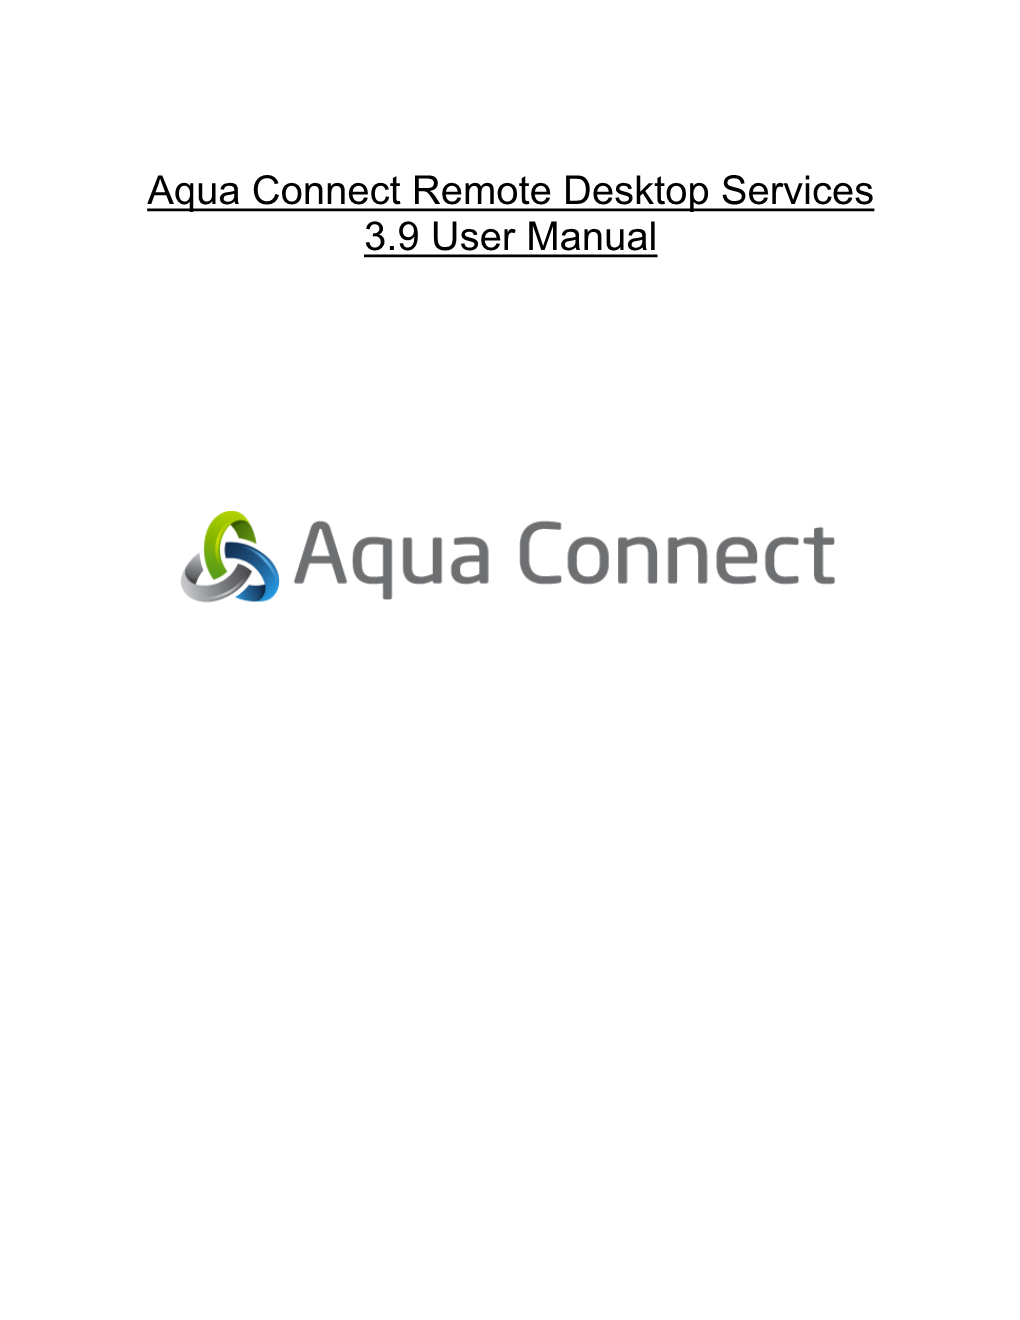 Aqua Connect 3.9 User Manual